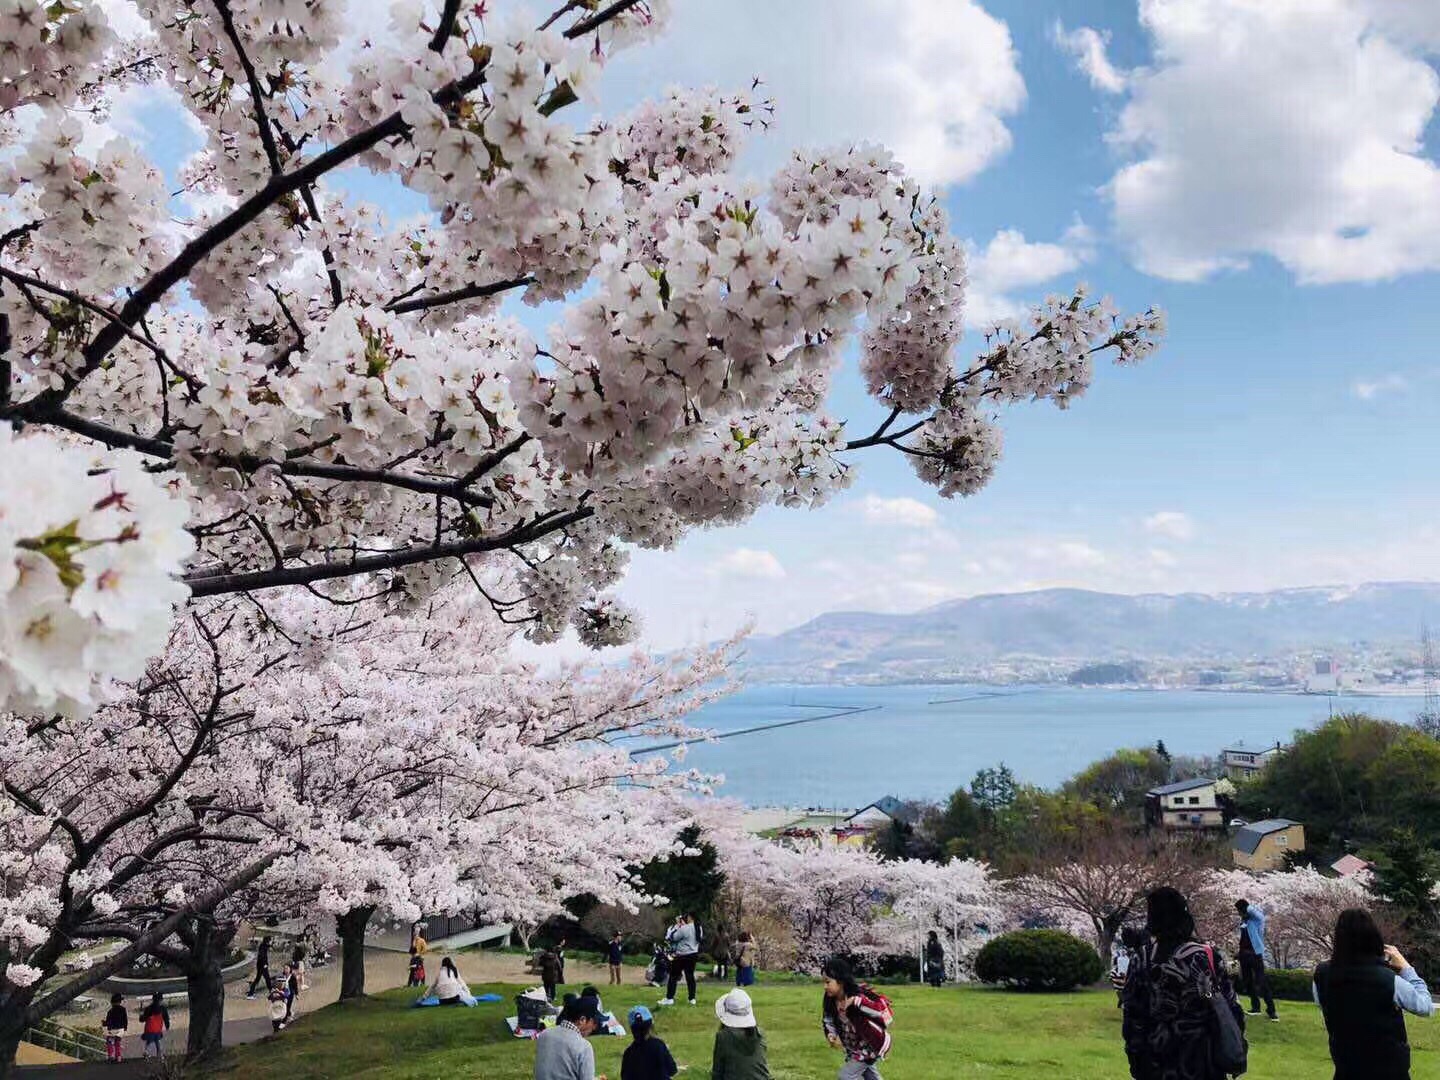 樱花的地位在日本是举足轻重的，在许多动漫里樱花甚至扮演着某些角色和寓意。今年北海道的花期比往年略微早